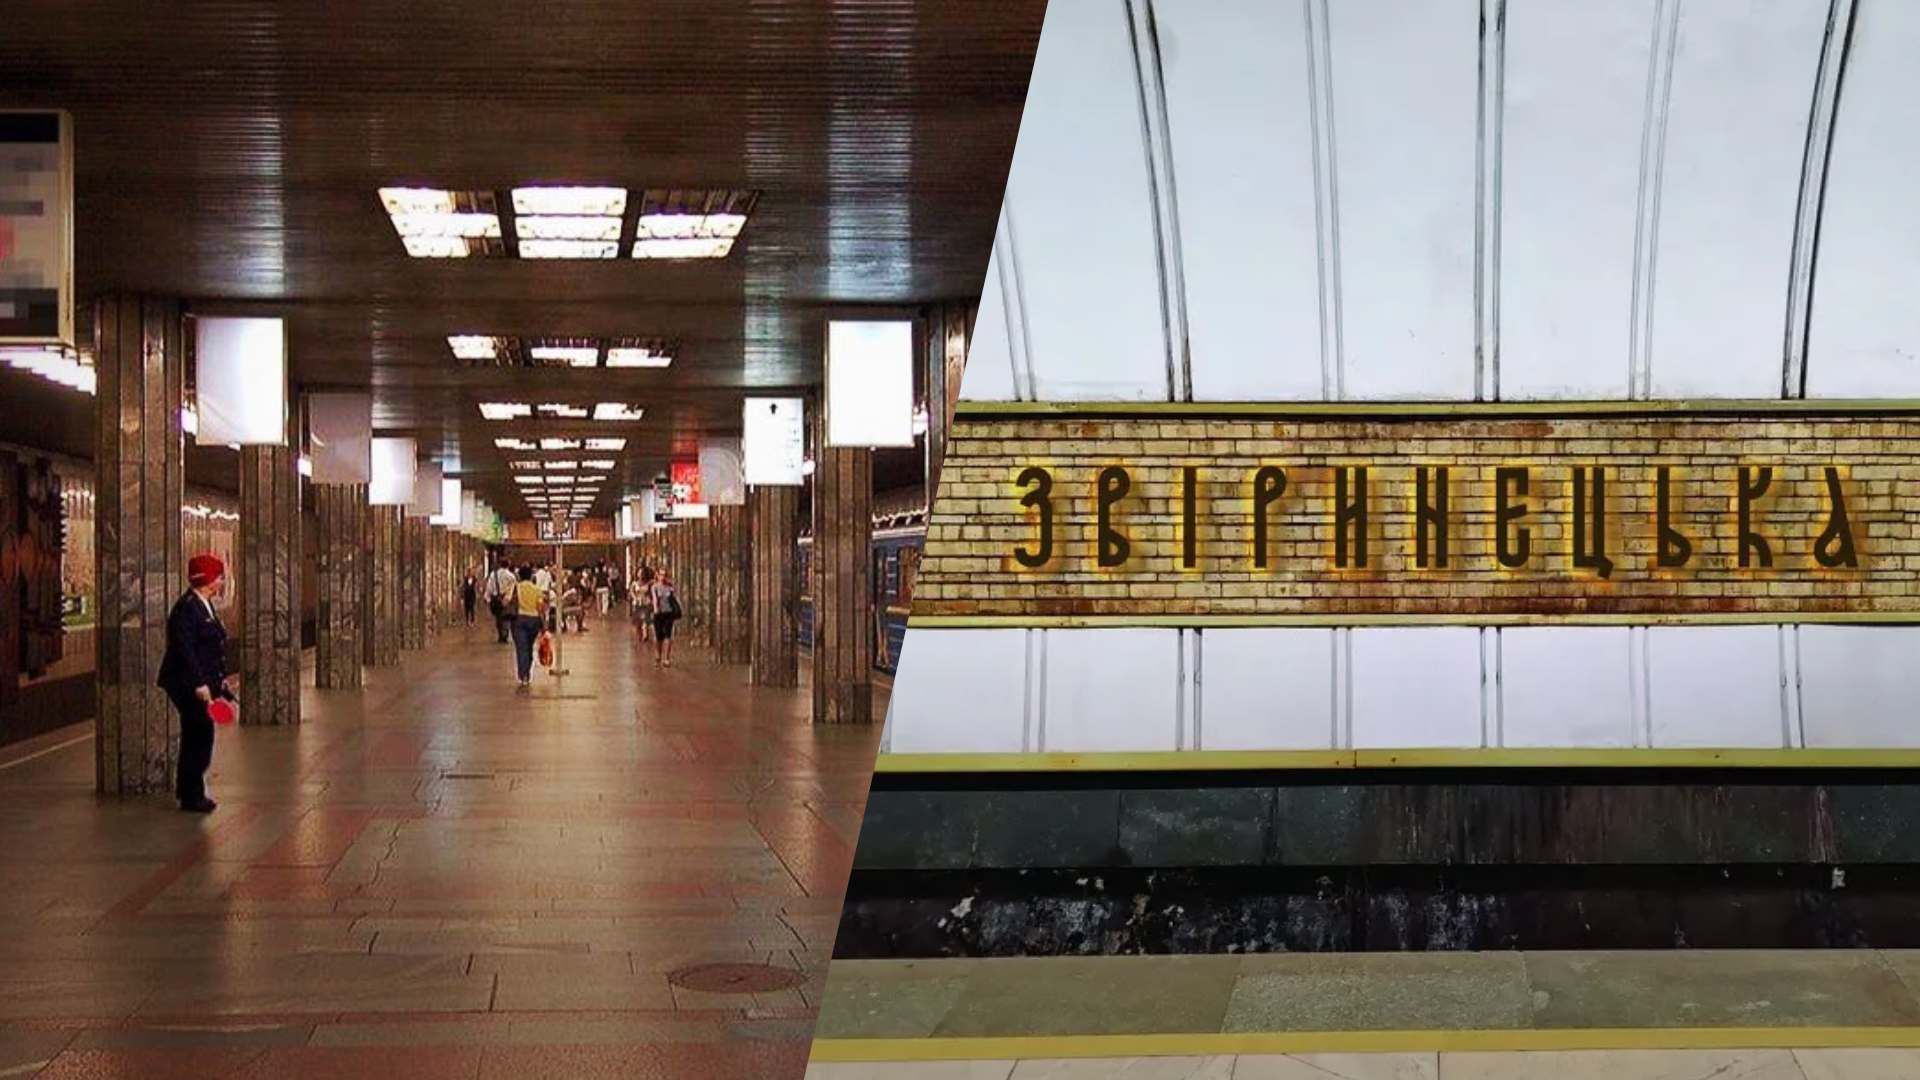 Як може виглядати нова назва станції метро у Києві: дизайнер розробив шрифт